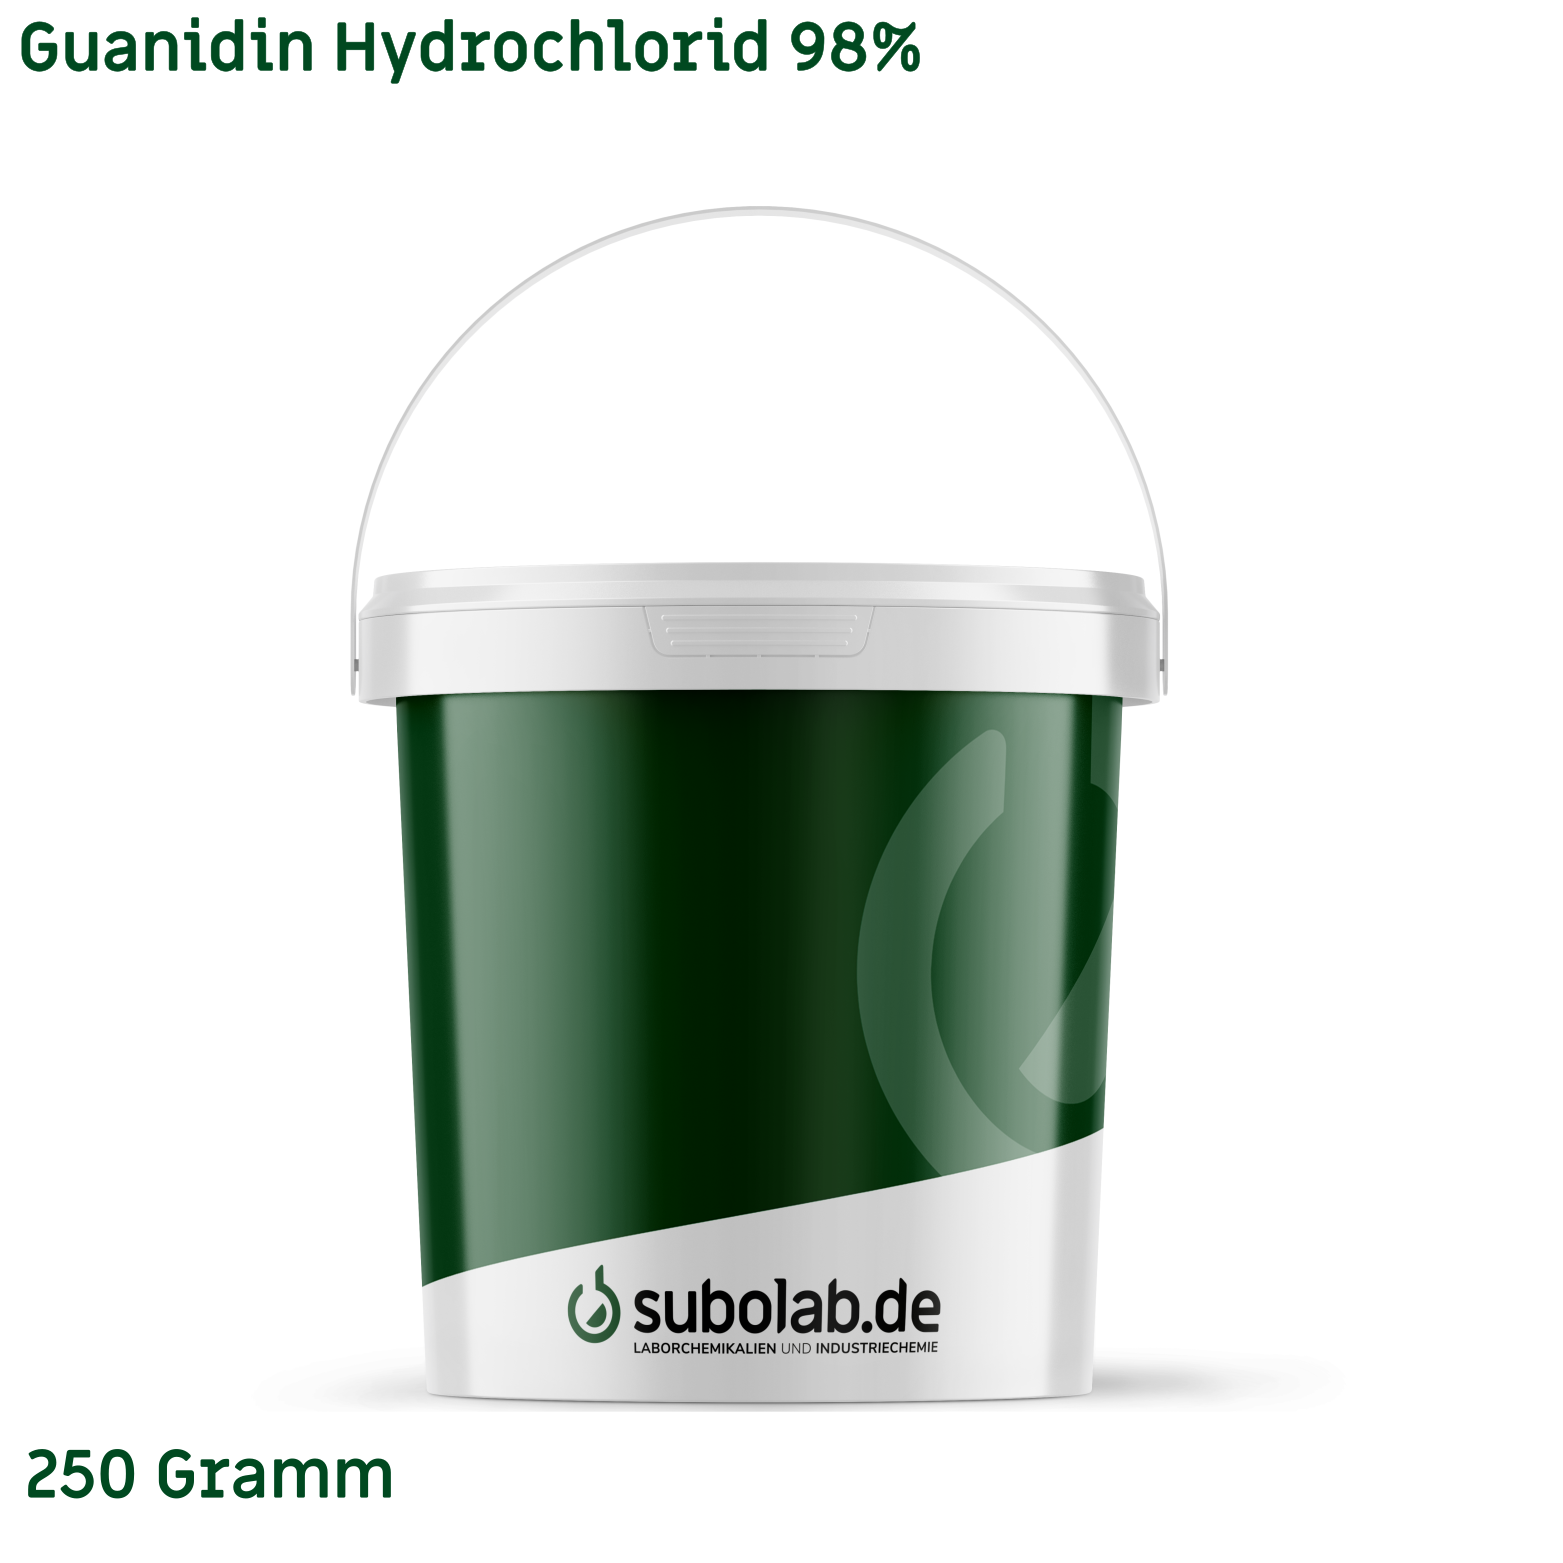 Bild von Guanidin Hydrochlorid 98% (250 Gramm)